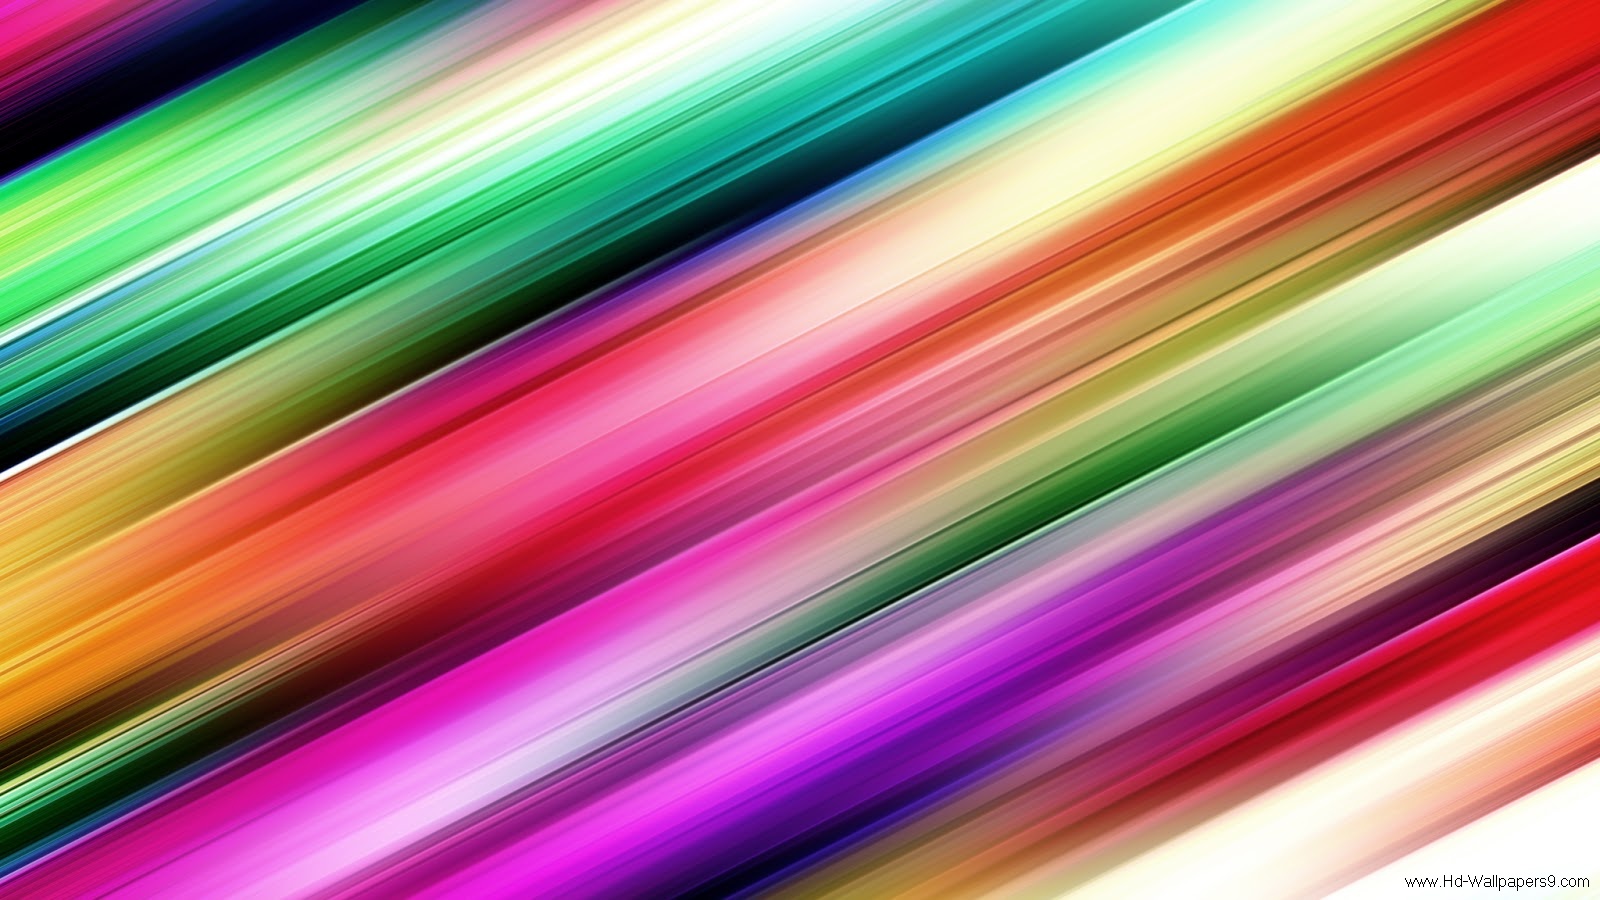 Rainbow Desktop Wallpapers Photos Rainbow Desktop Wallpapers Image